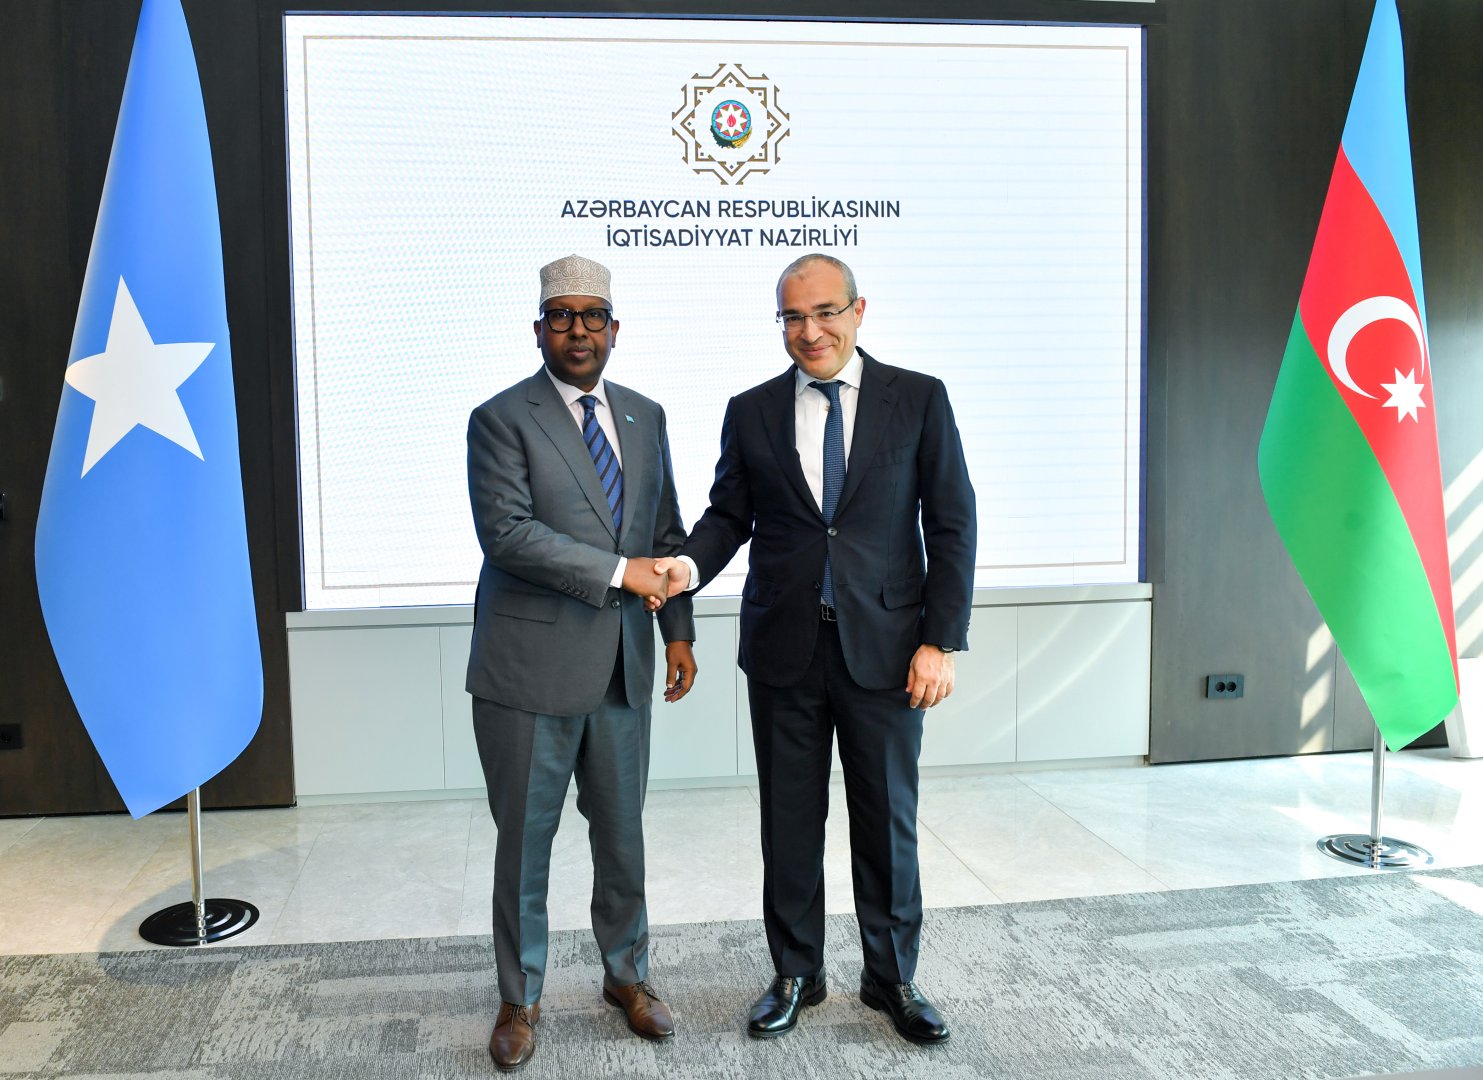 Обсуждены возможности партнерства в сфере энергетики между Азербайджаном и Сомали  (ФОТО)